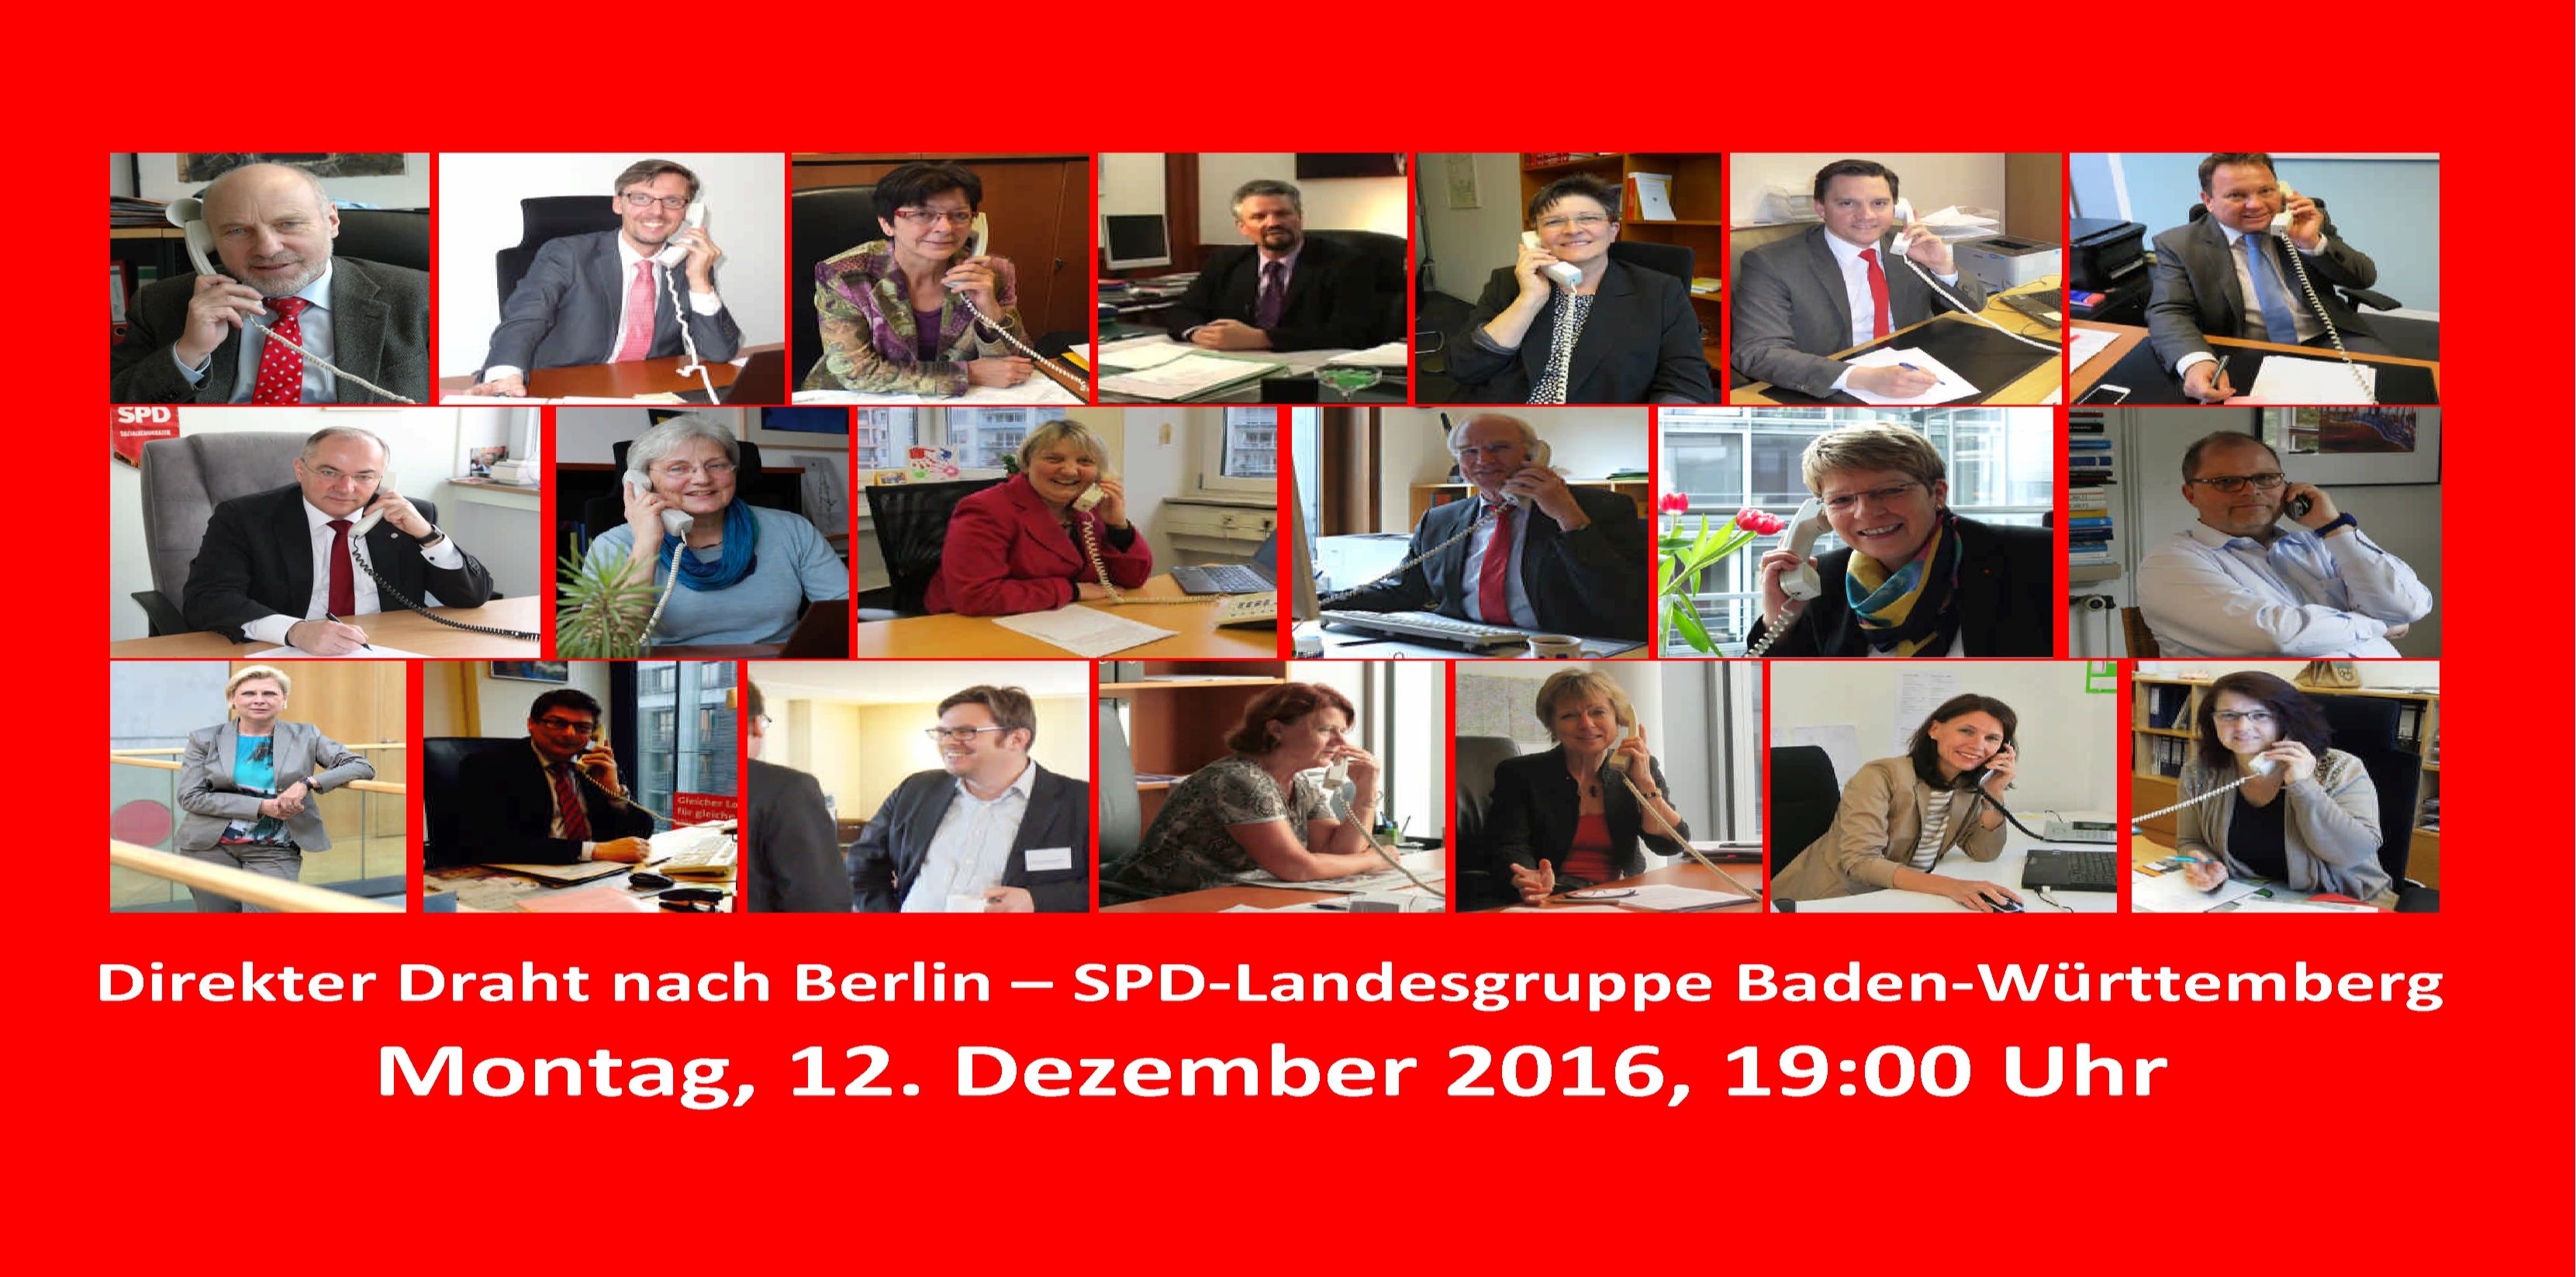 Direkter Draht nach Berlin Nächste Telefonsprechstunde der SPD-Landesgruppe im Bundestag